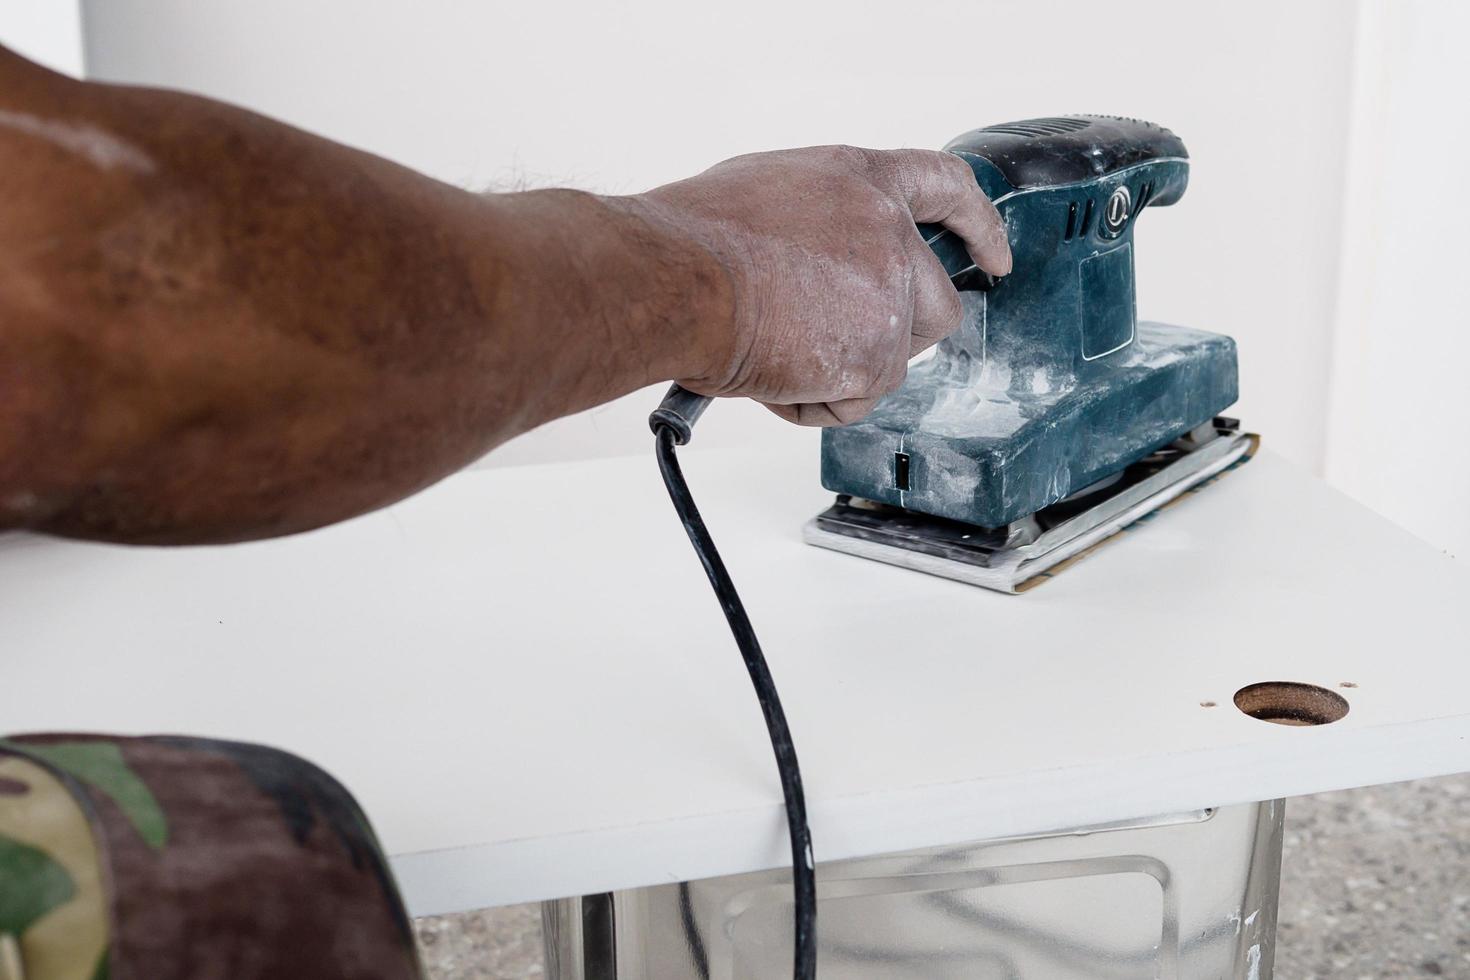 schilder werkt aan het schilderen van meubels met behulp van een schrobmachine die een gladde en schone oppervlaktekleur maakt - timmerman werkt met handgereedschapconcept foto